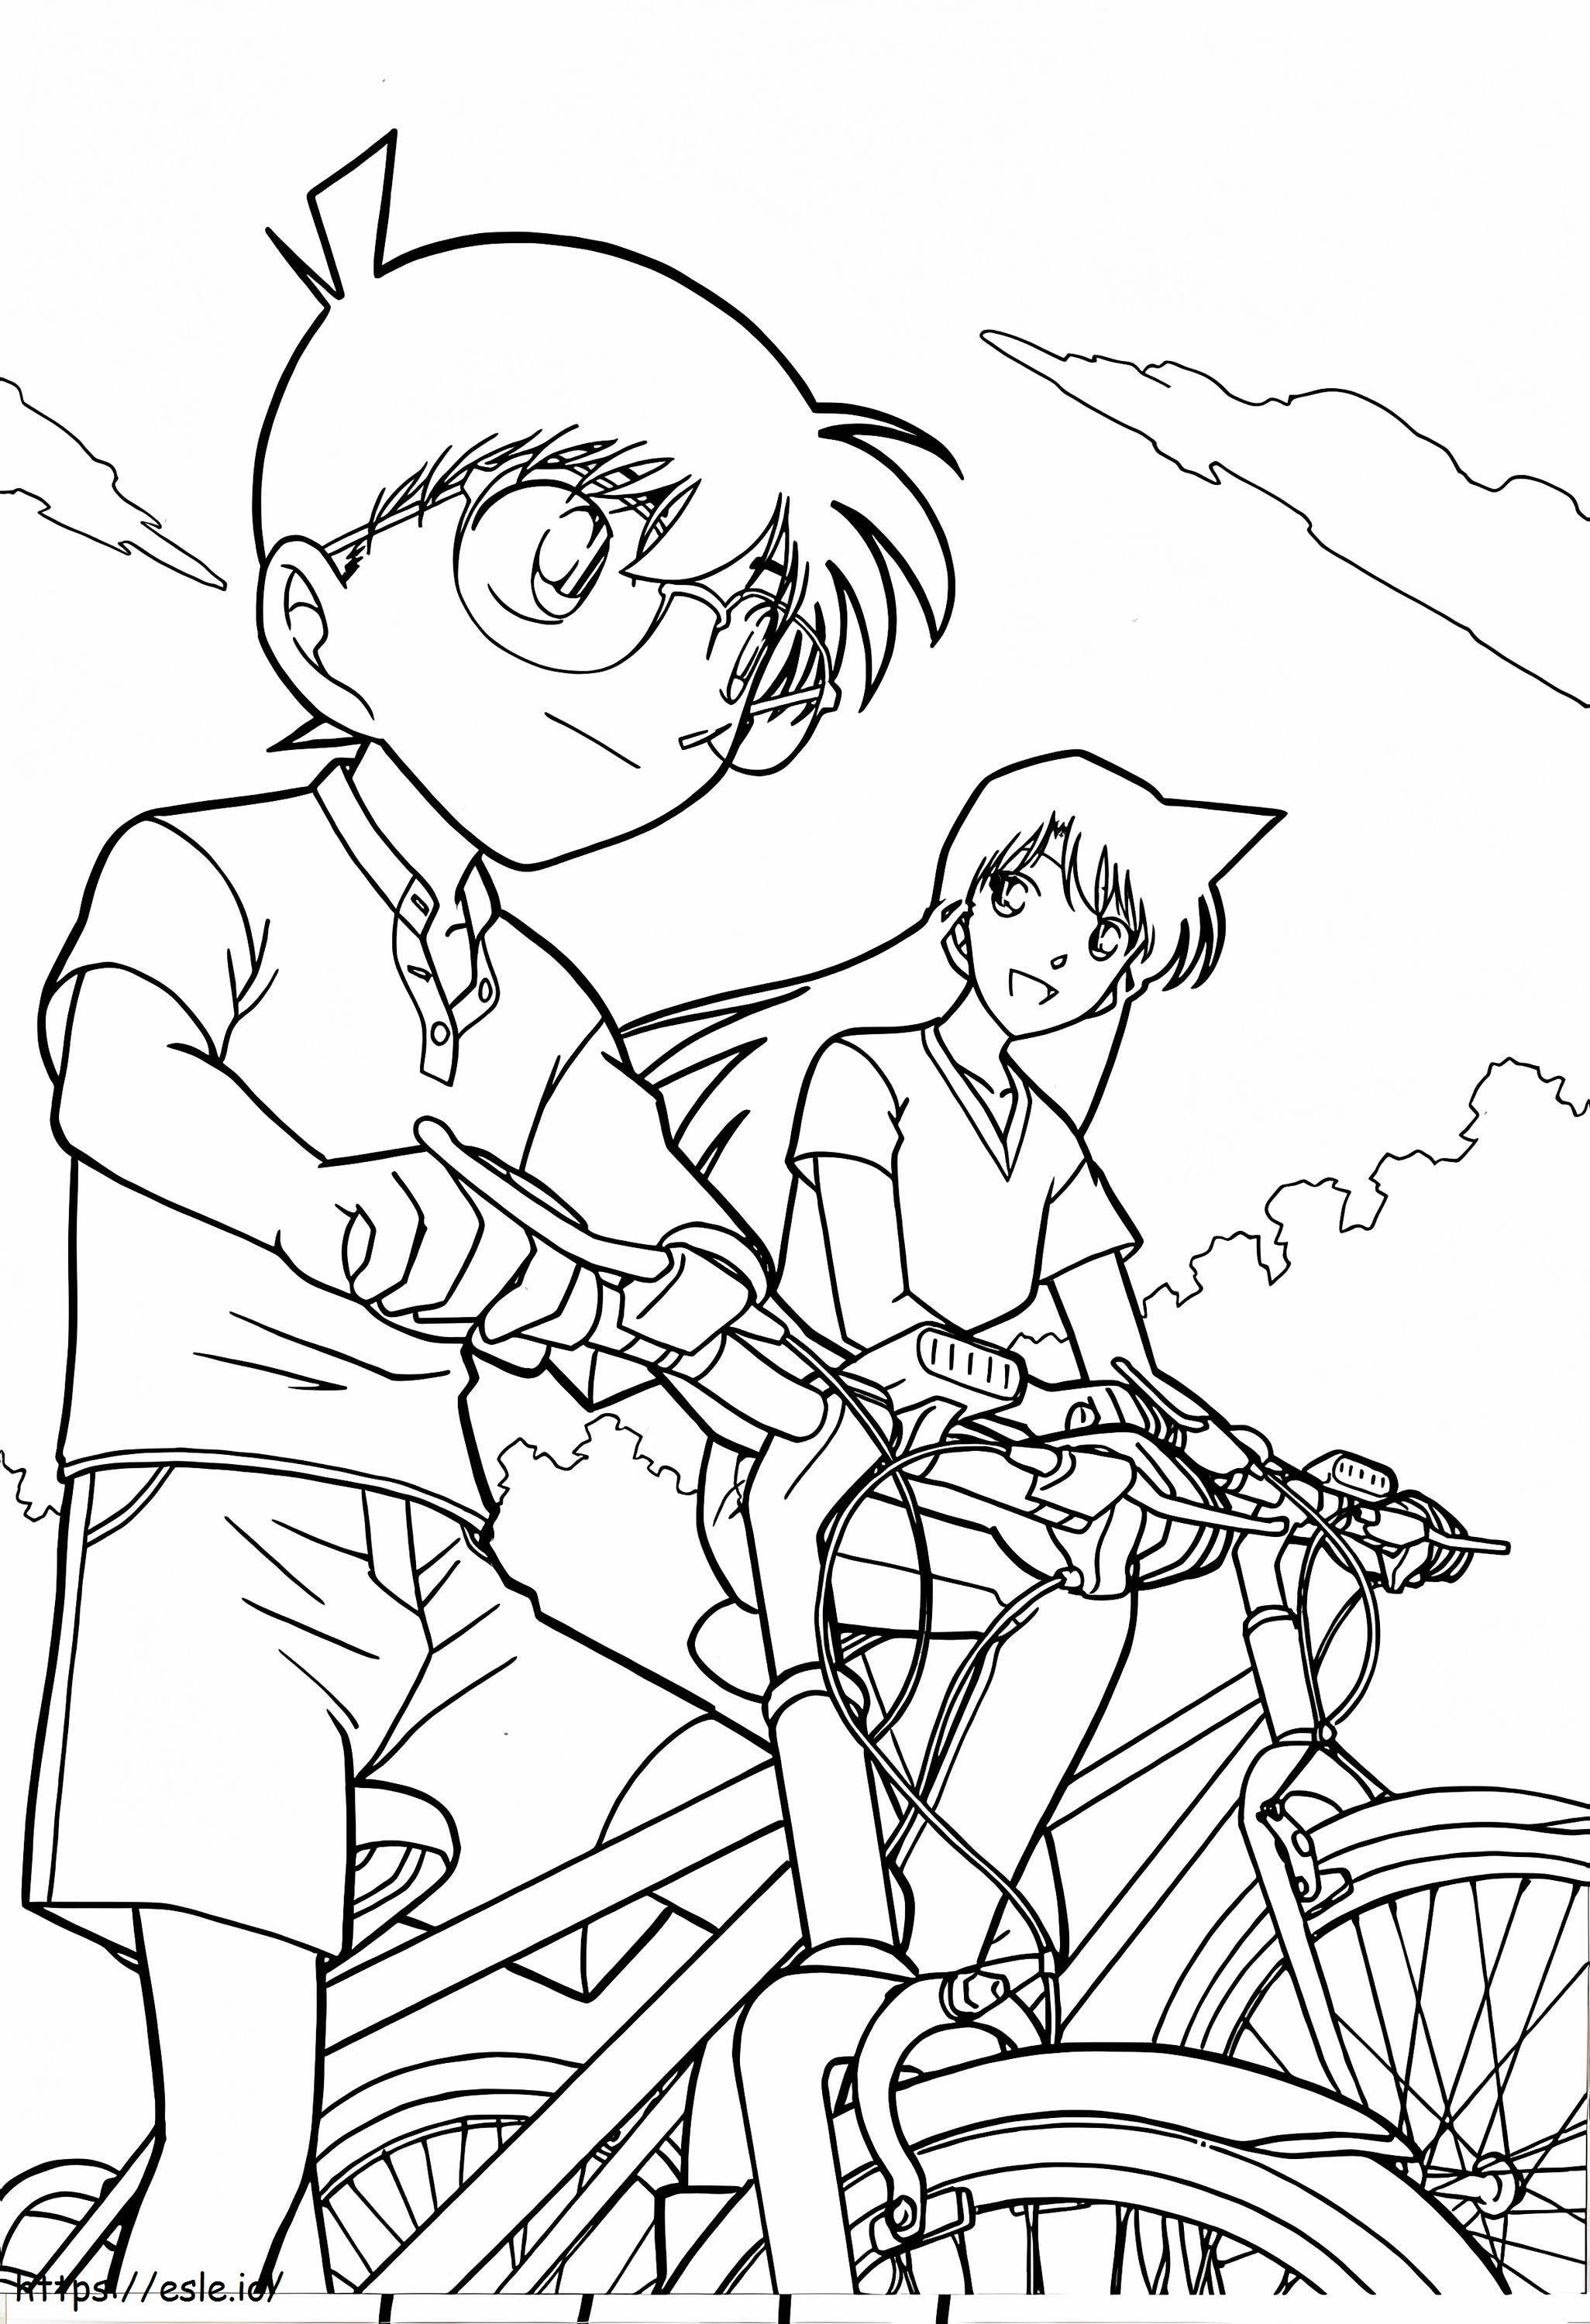 Conan ve bisikletle koştu boyama